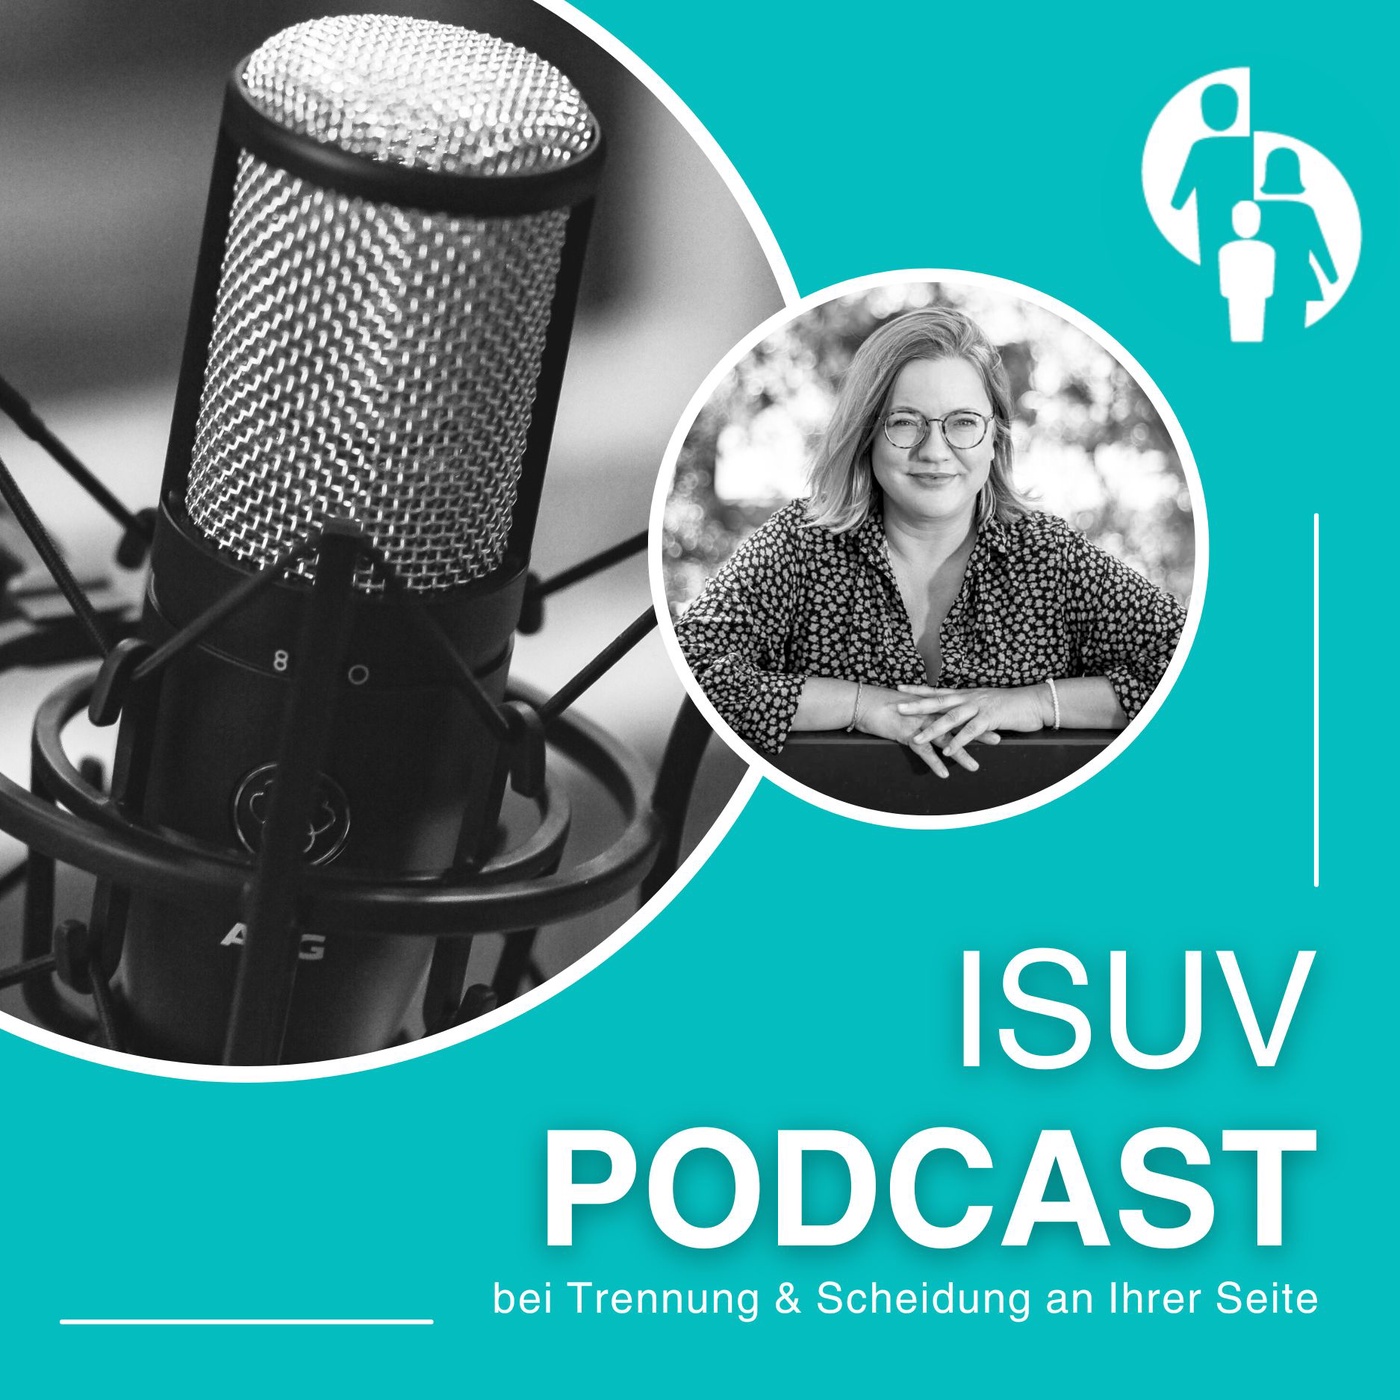 ISUV-Podcast: Bei Trennung & Scheidung an Ihrer Seite